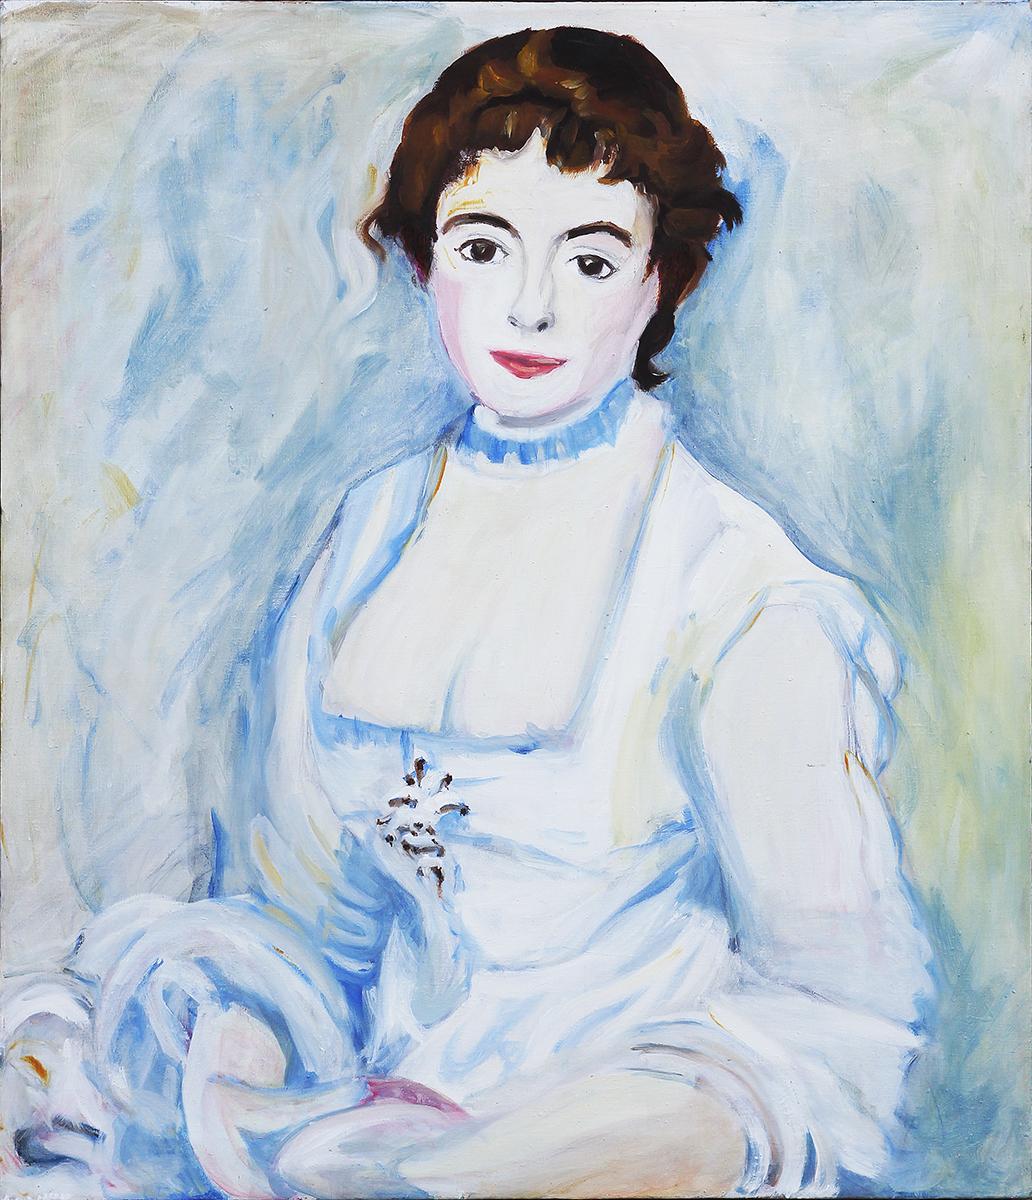 John O' Neil Abstract Painting – ""Over and Under"" Weichblaues getöntes Porträt einer Dame, die ein viktorianisches Kleid trägt